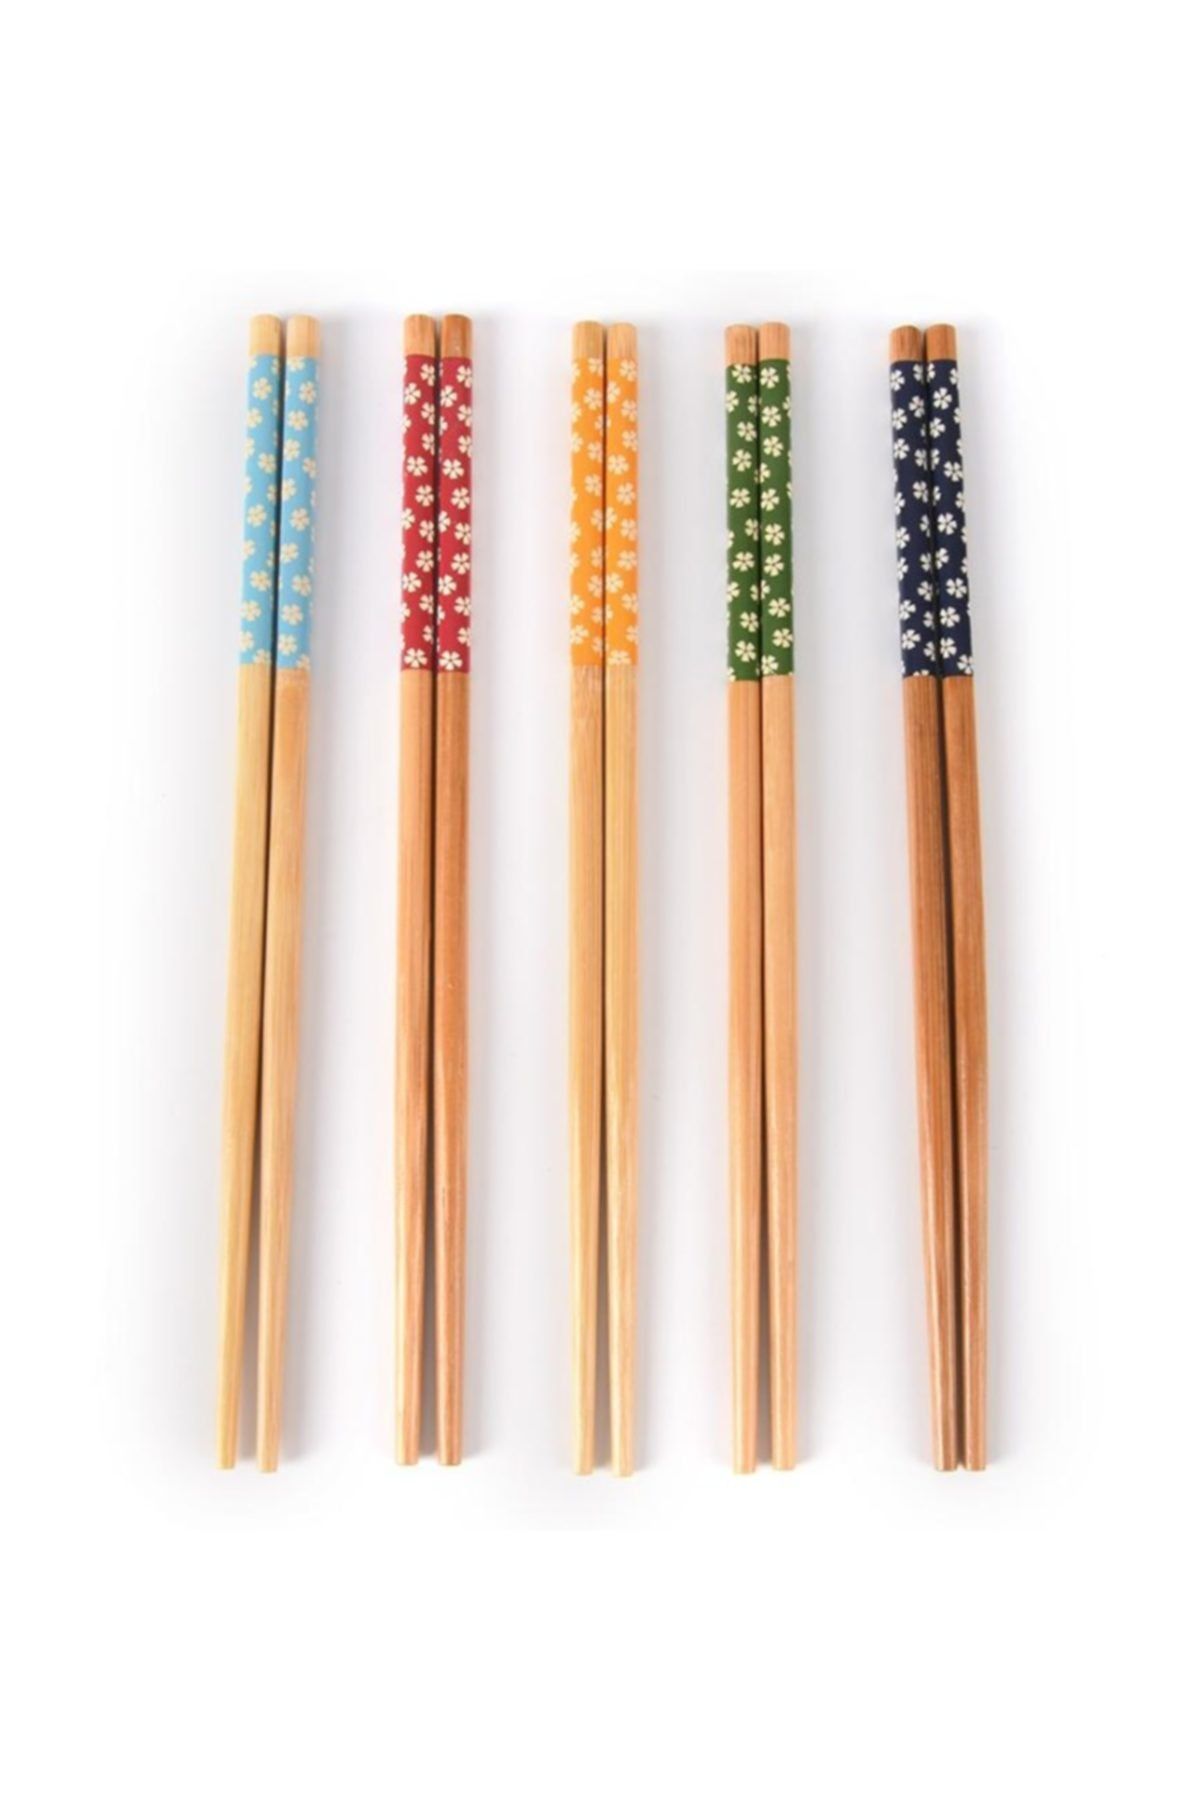 Woody Bambu Ahşap Çin Çubukları - Bamboo Chopsticks - 5 Çift